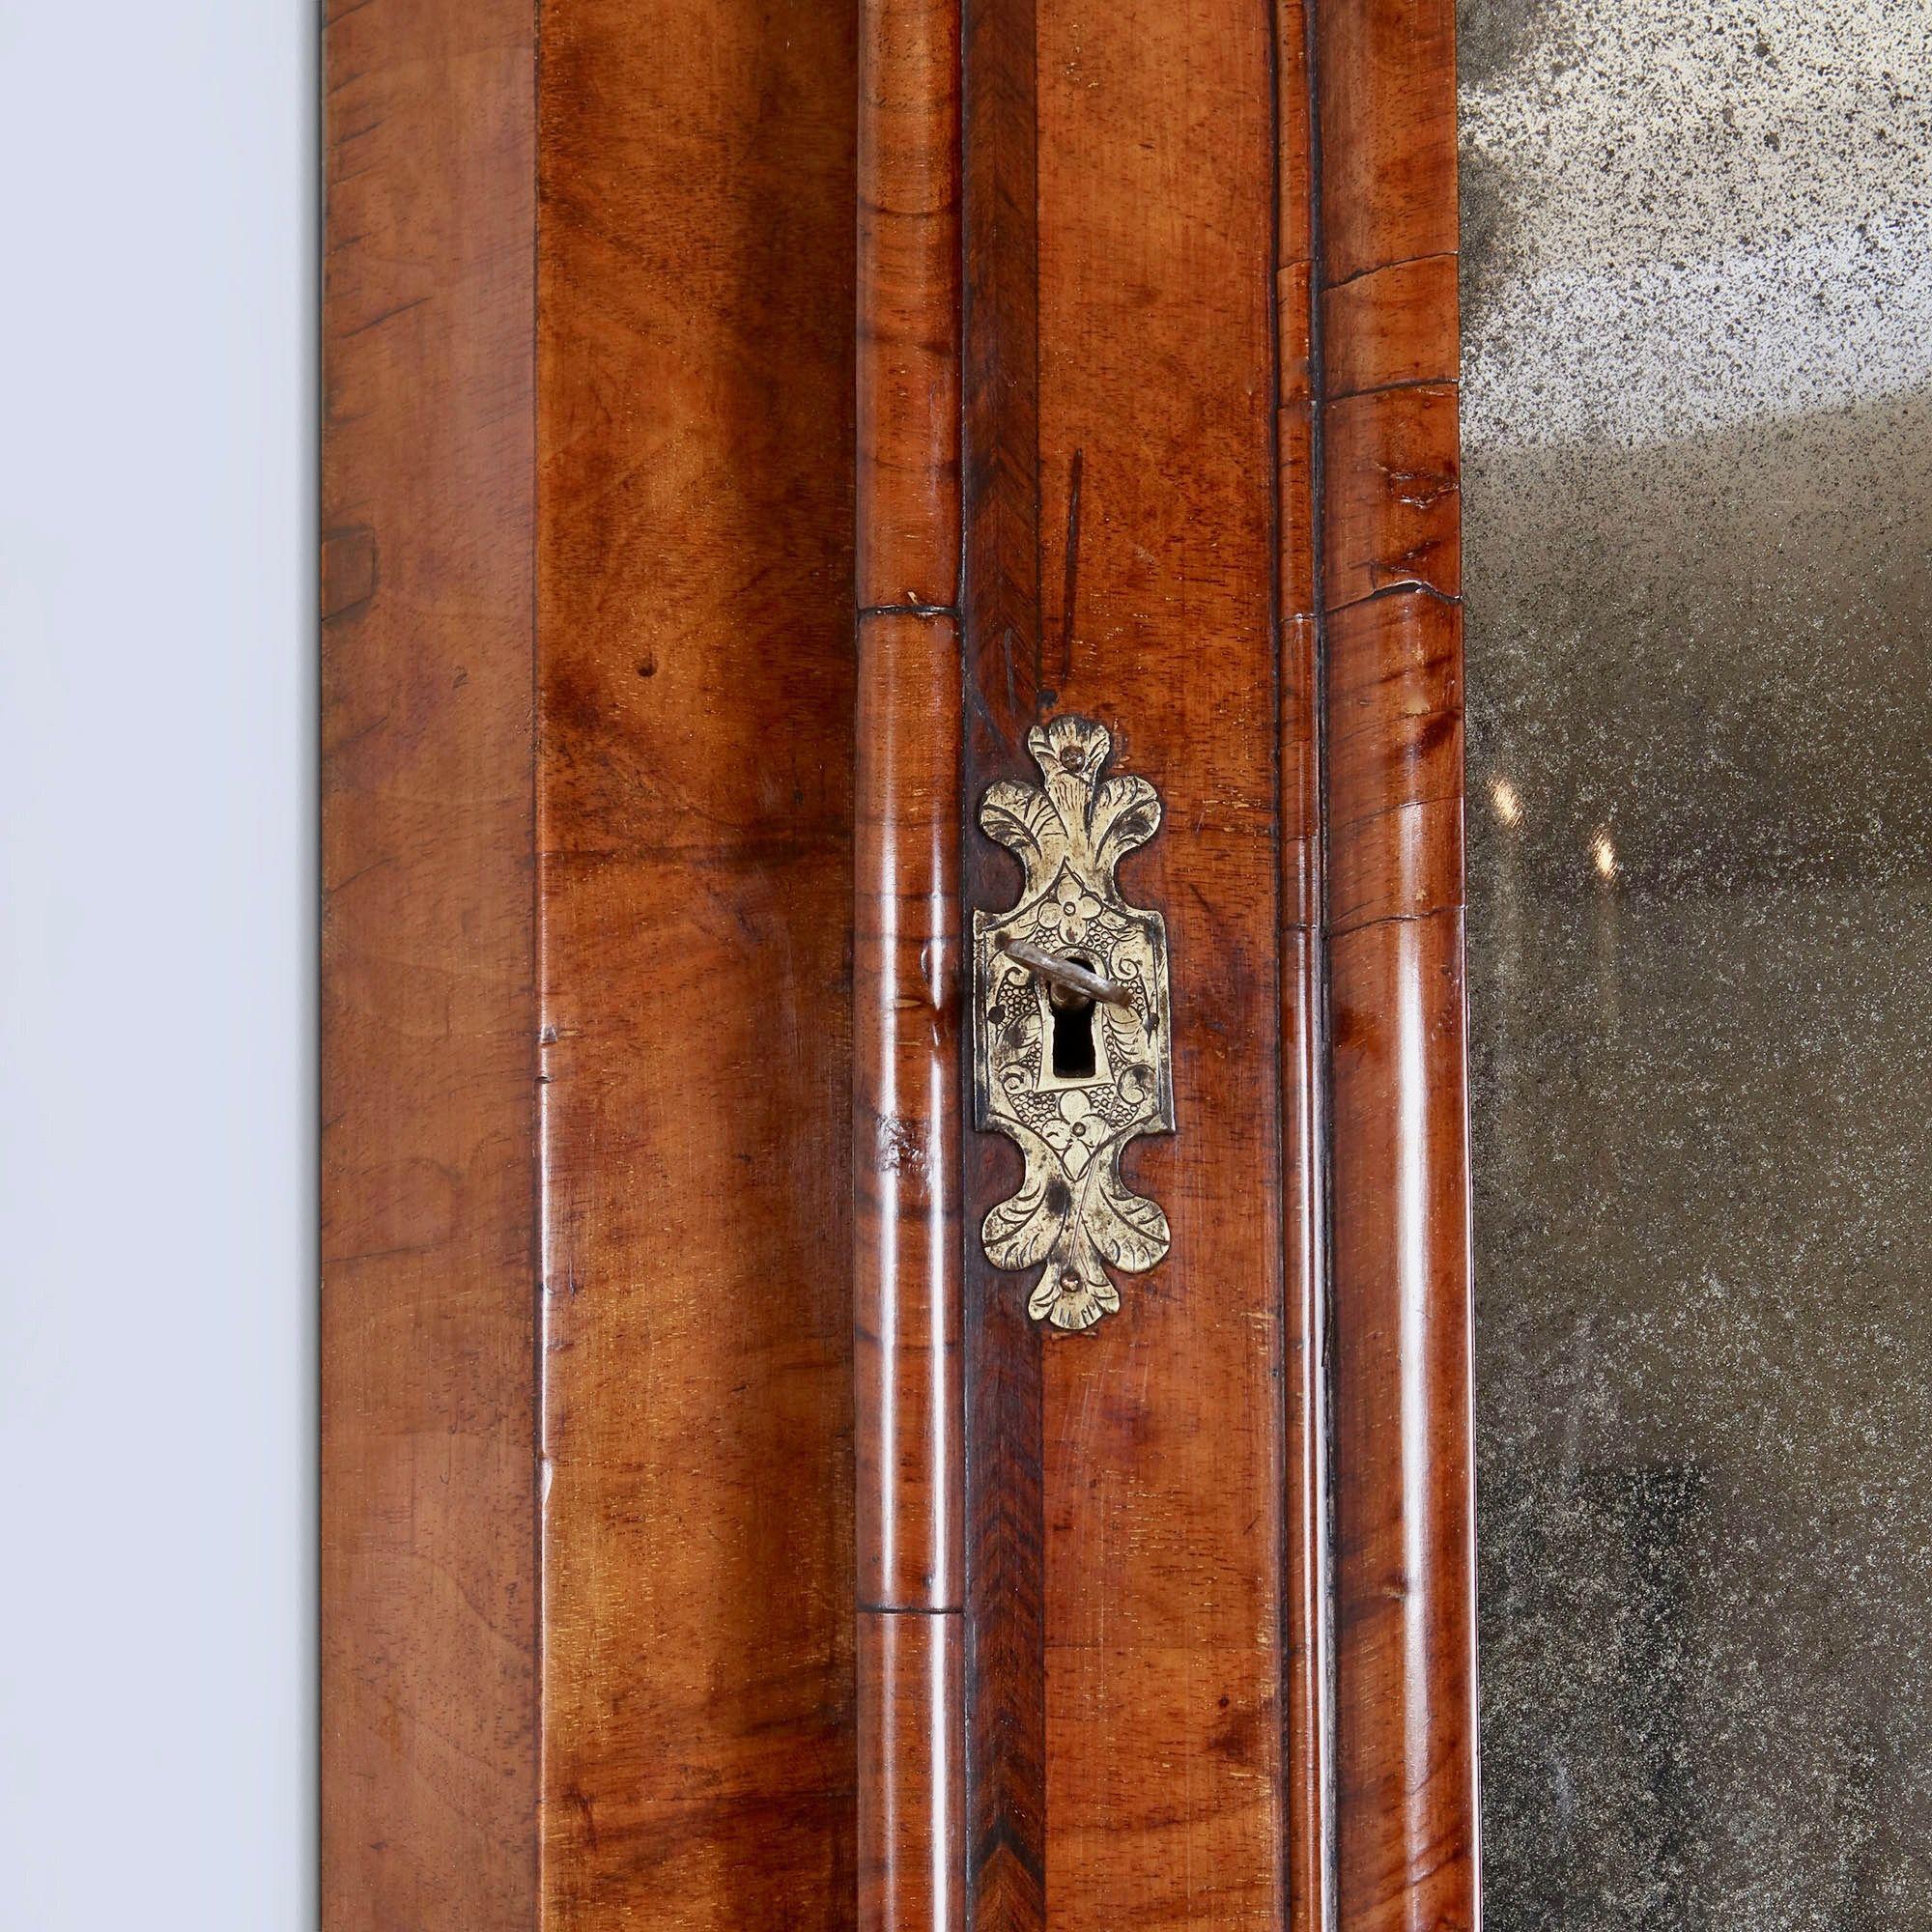 Ein wirklich bemerkenswerter Fund im Originalzustand. 
An der Tür wird eine geformte, weich abgeschrägte Spiegelplatte von einer quer verlaufenden Leiste im typischen Queen-Anne-Design umrahmt, die außerdem mit einem Querband und einer Federleiste